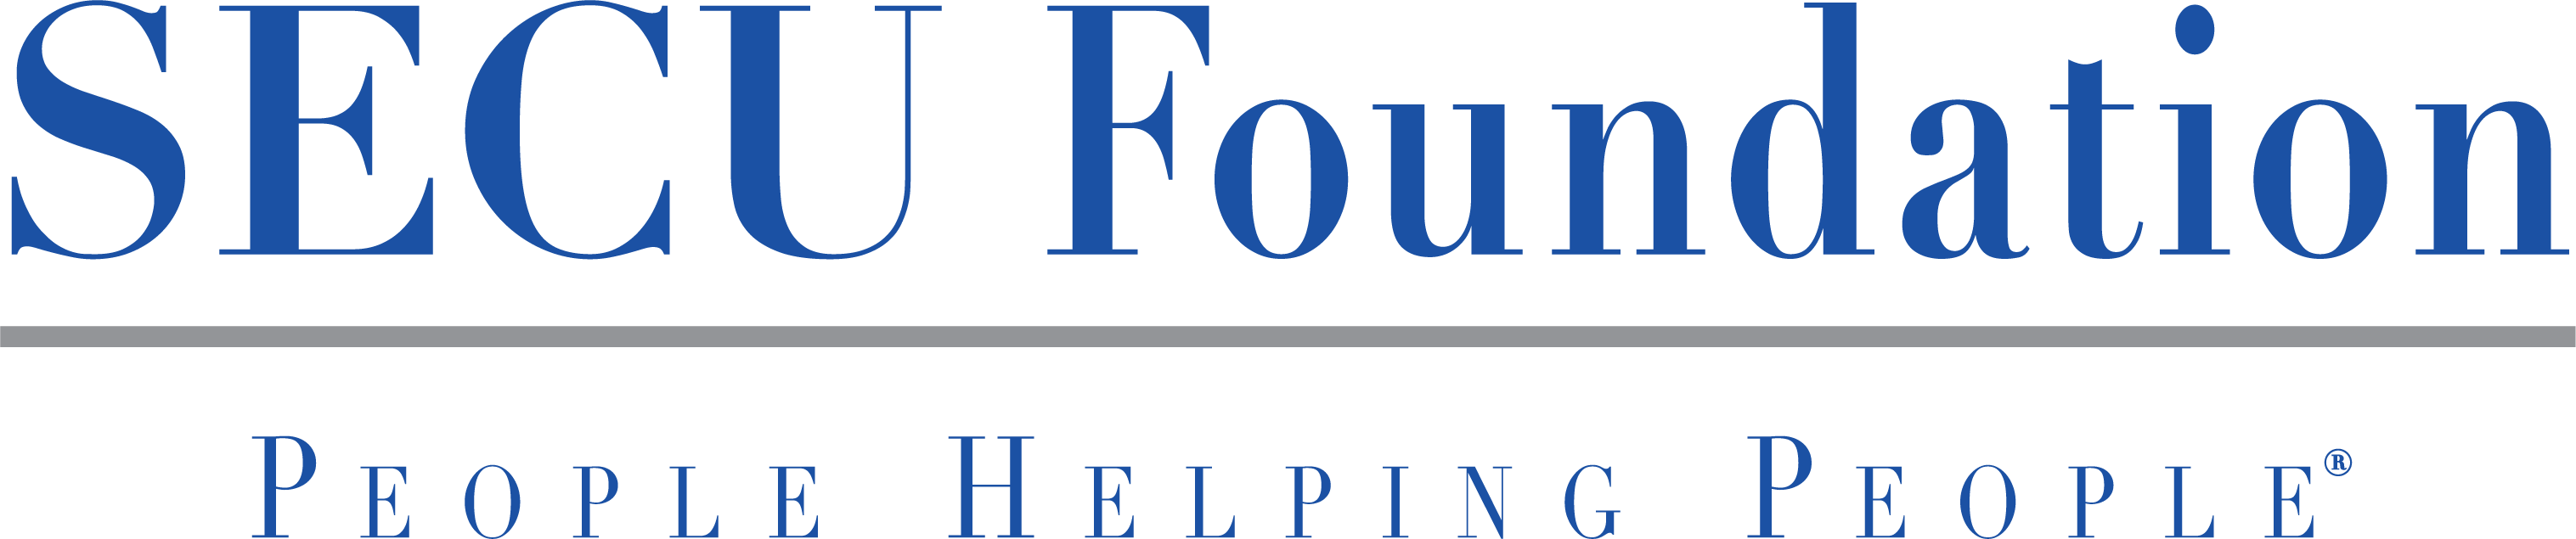 SECU Foundation logo